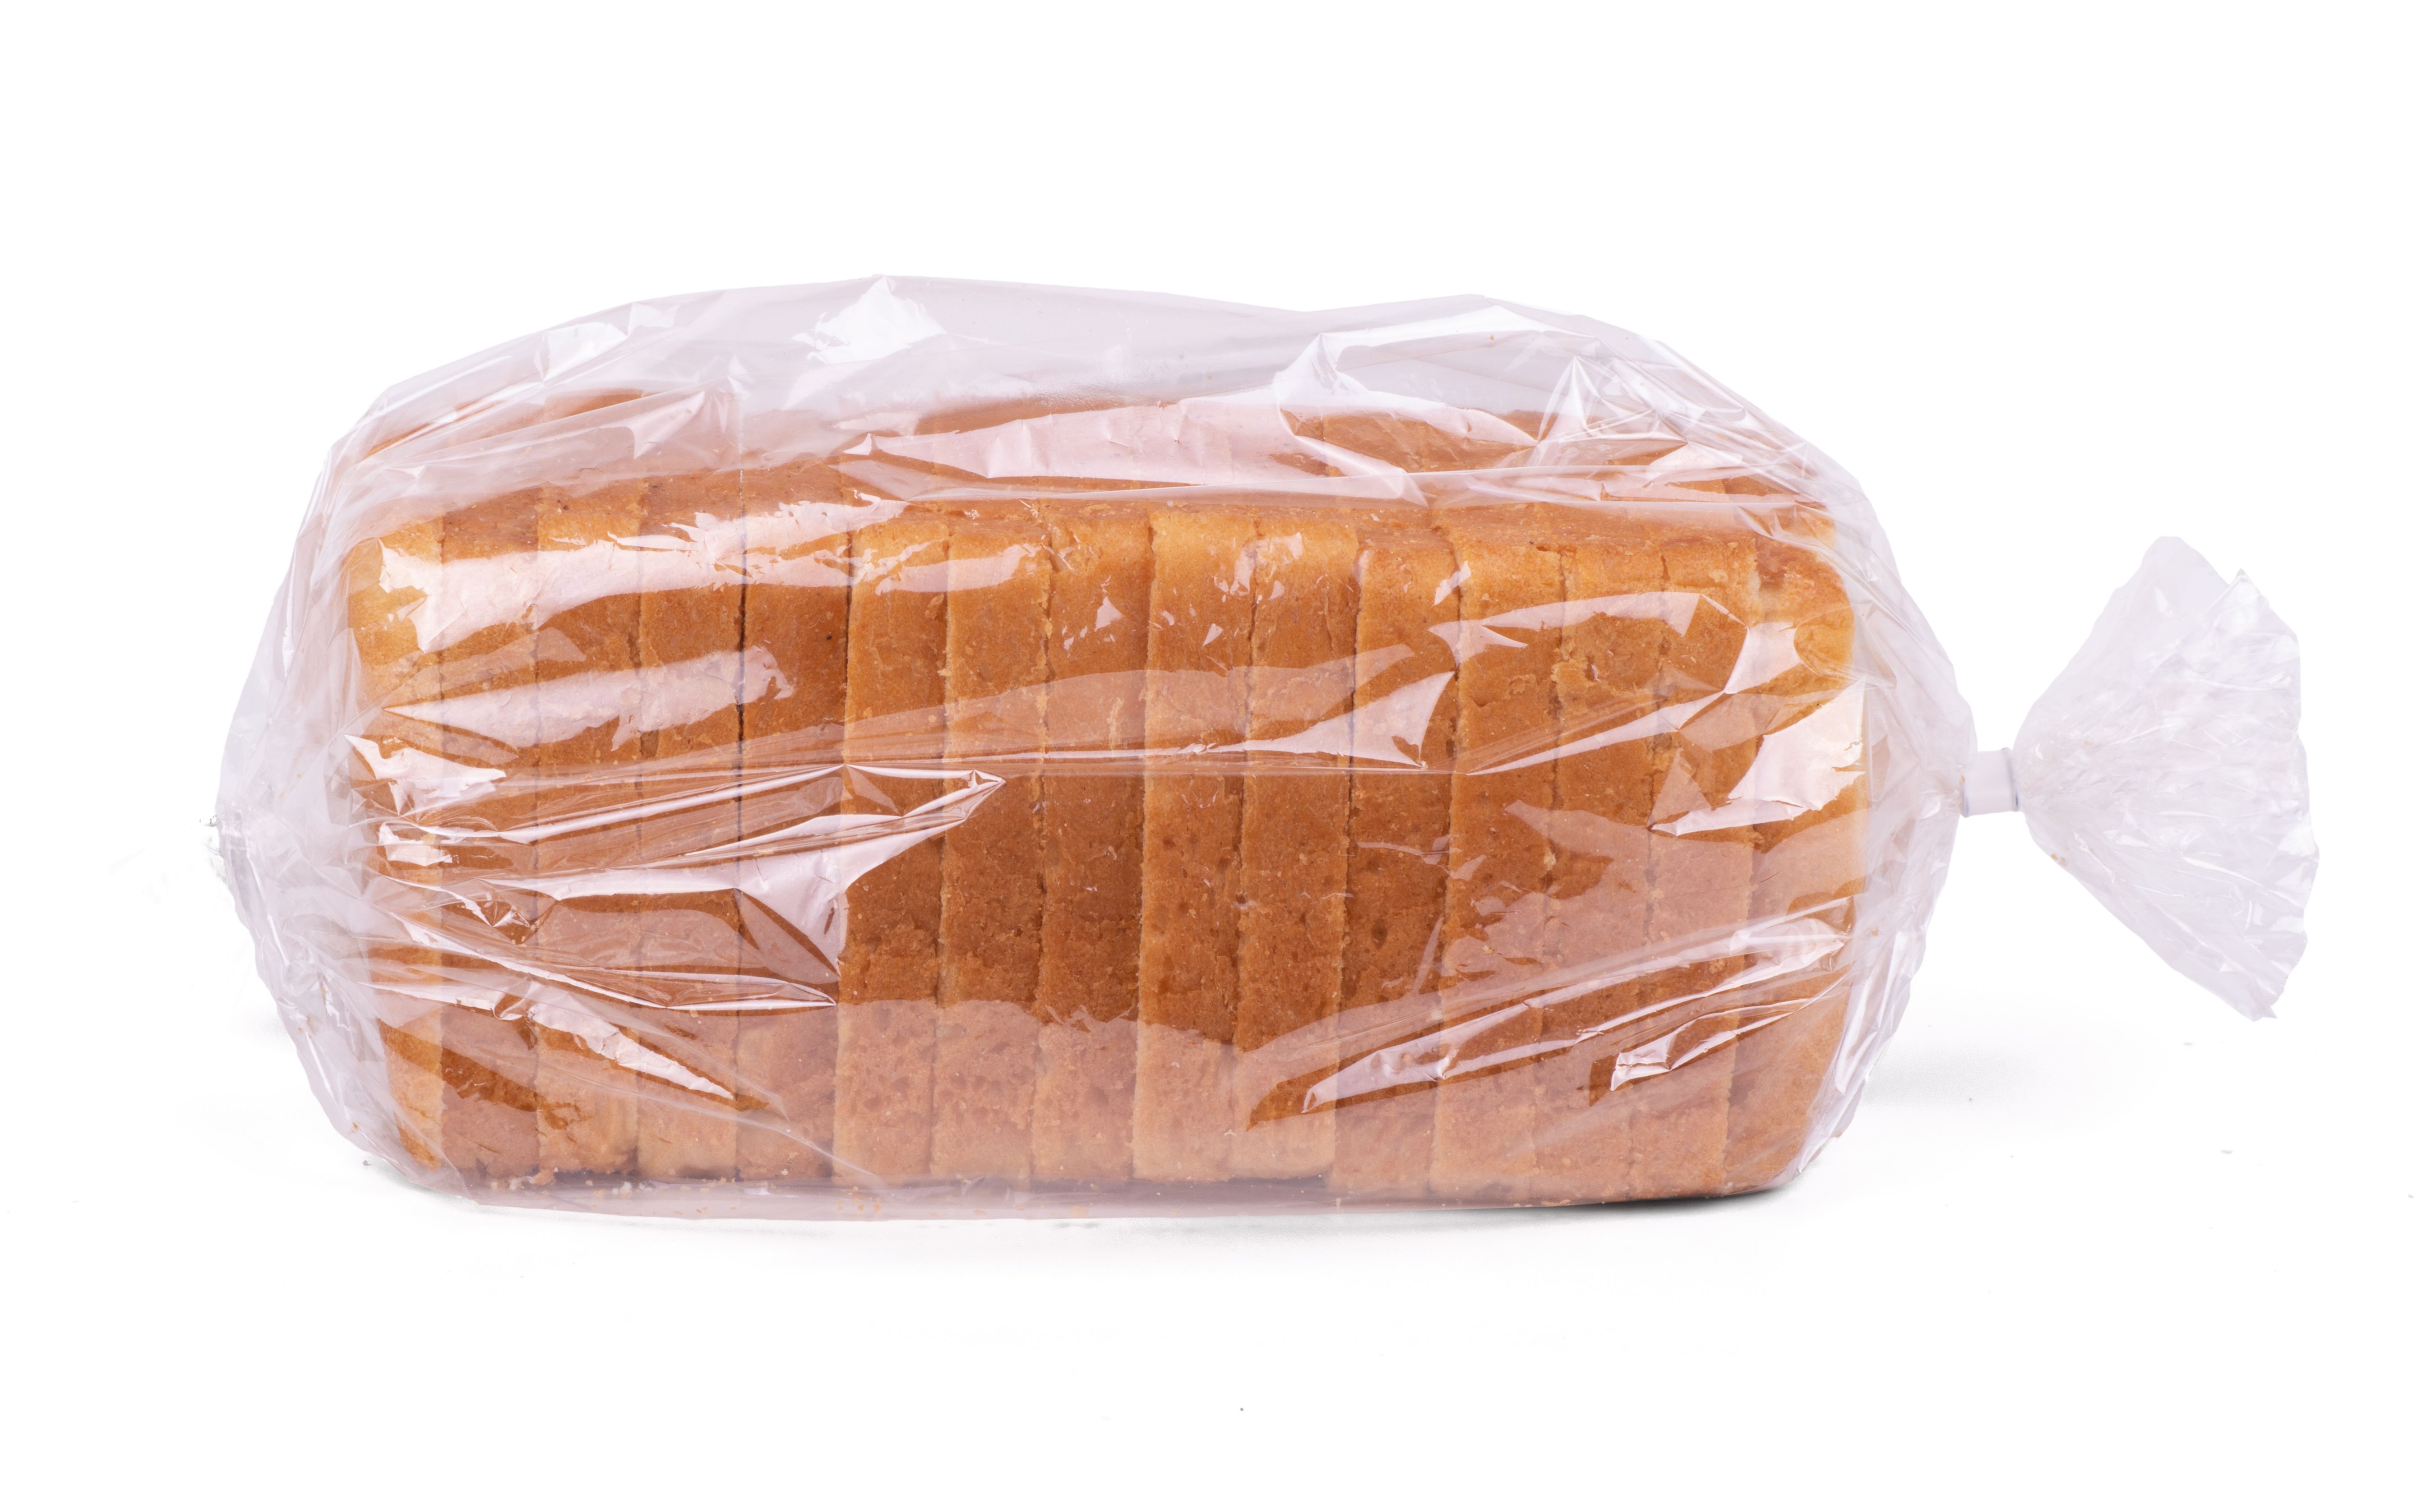 https://hips.hearstapps.com/hmg-prod/images/sliced-white-bread-in-plastic-bag-isolated-on-white-royalty-free-image-1670528444.jpg